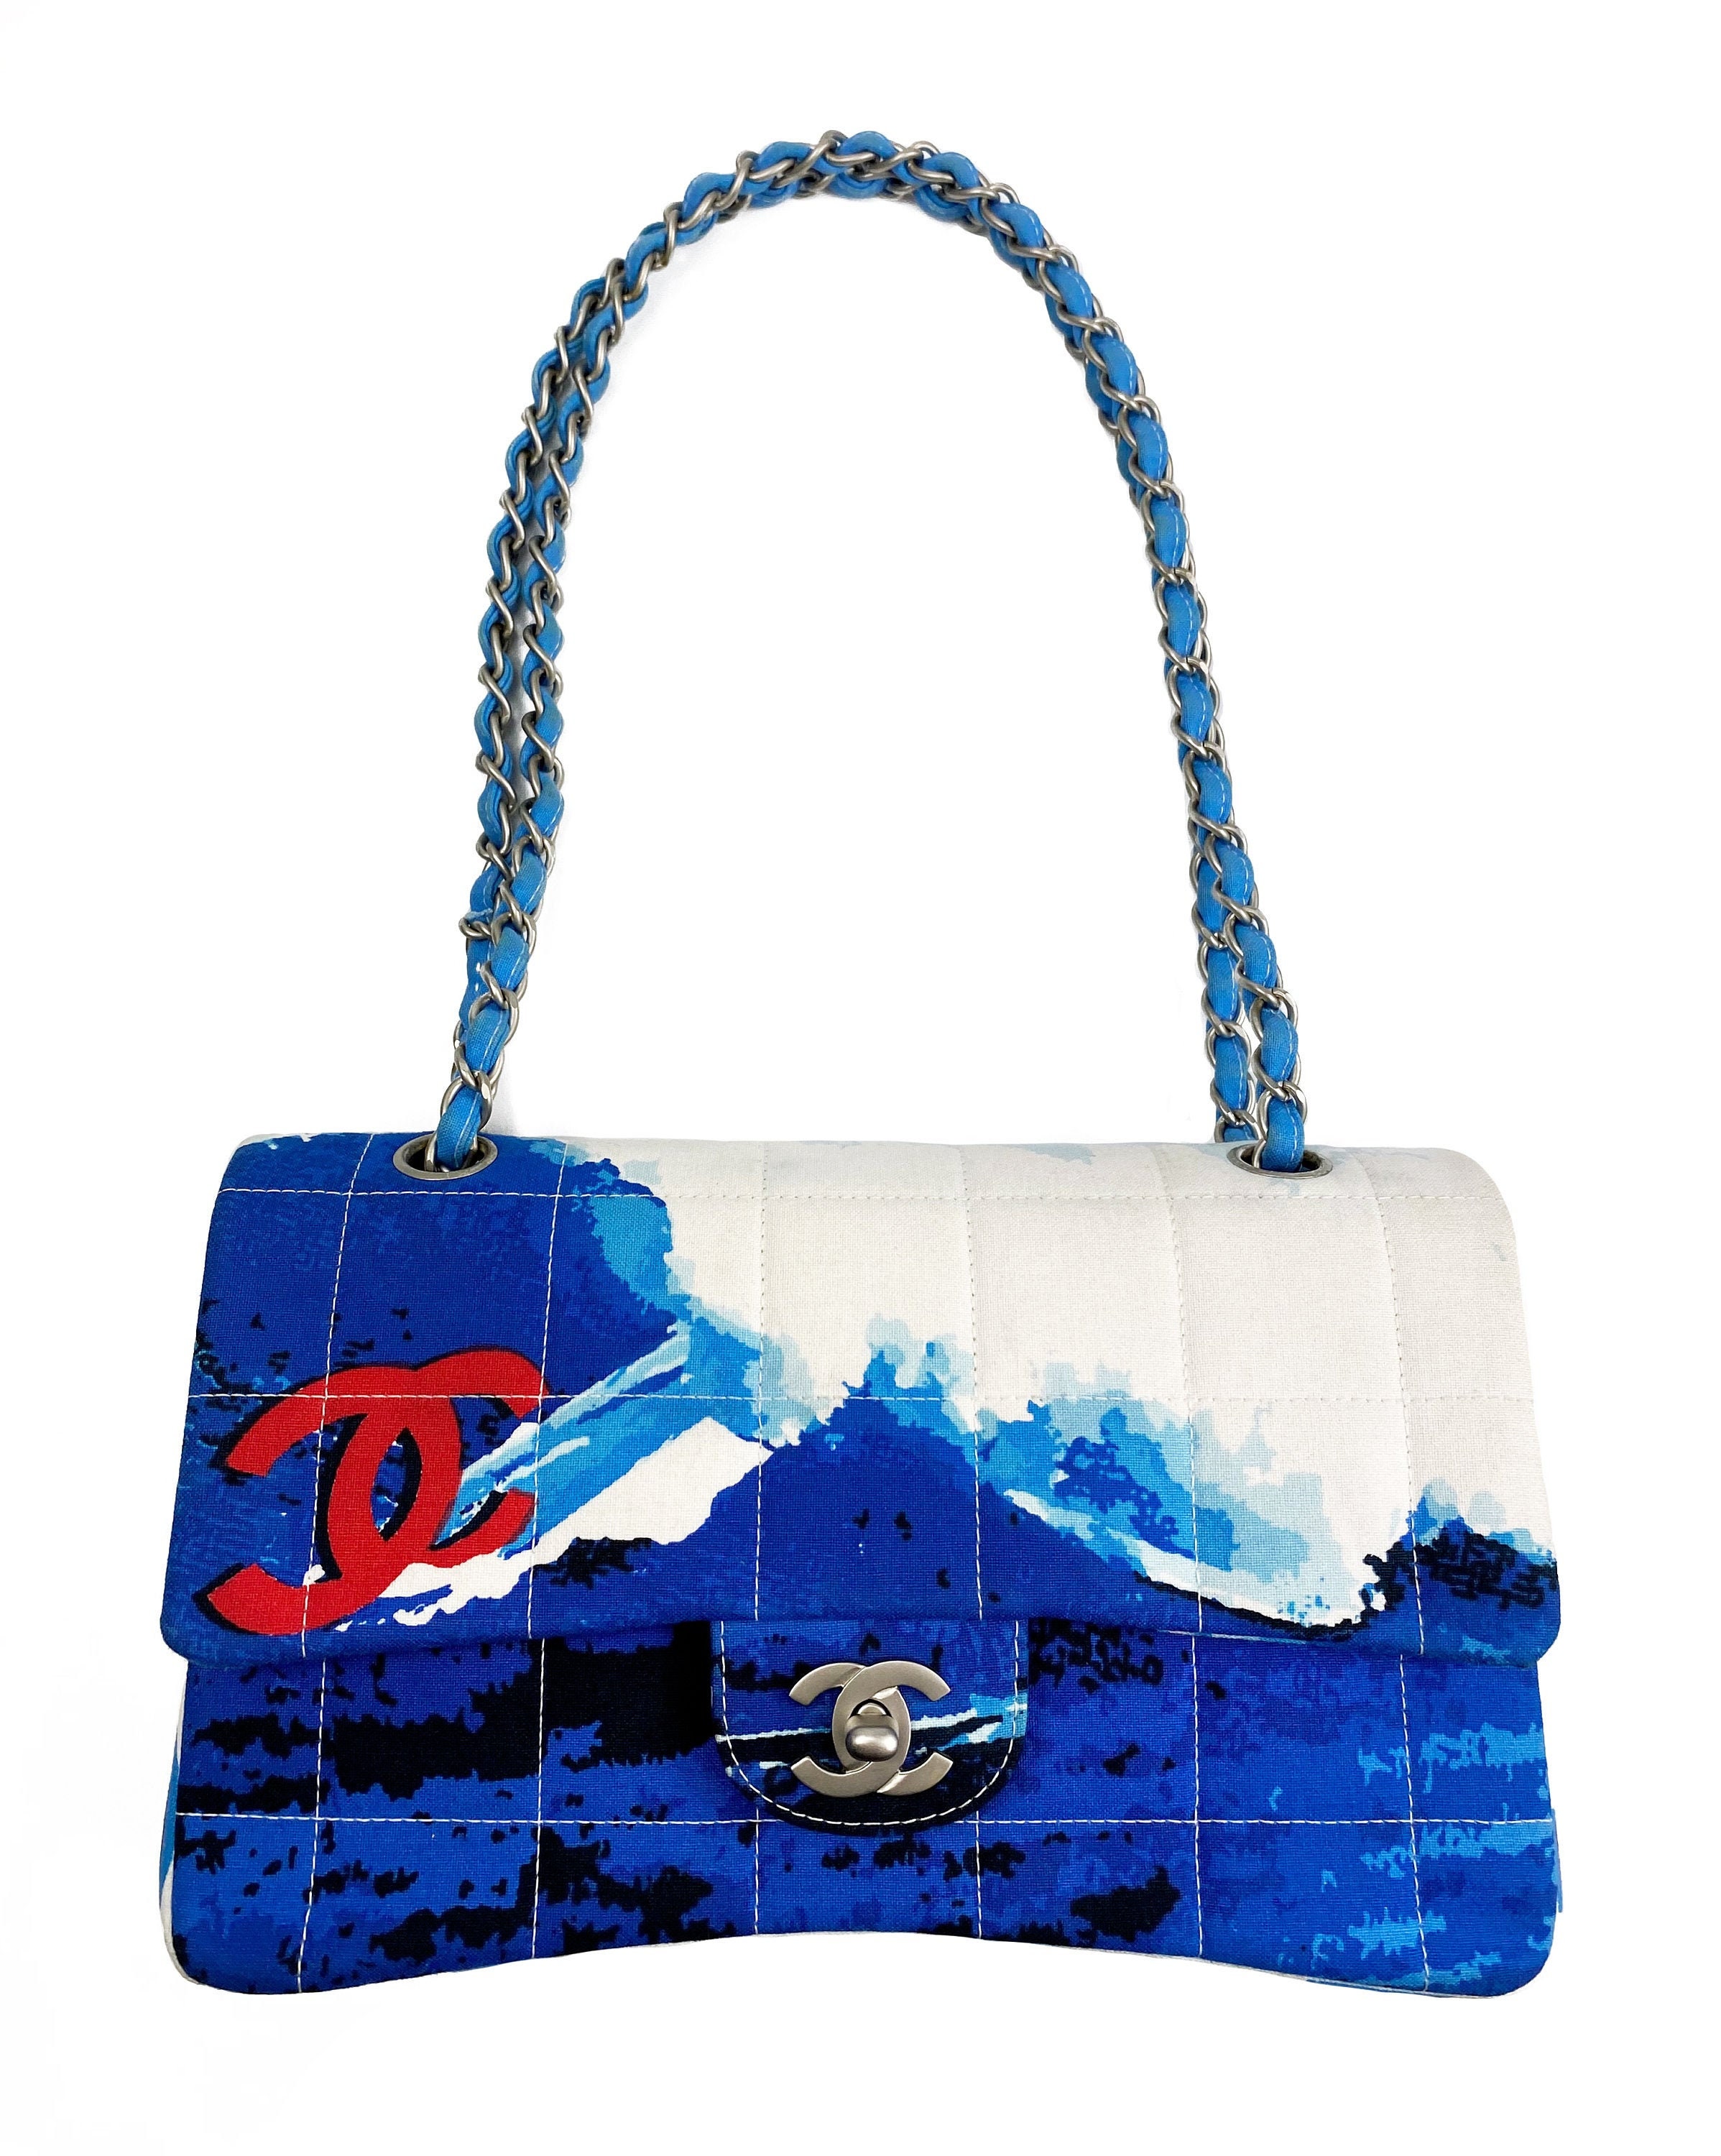 CHANEL Vintage Surf Bag Logo Print Quilted Canvas Flap Handbag -  Israel